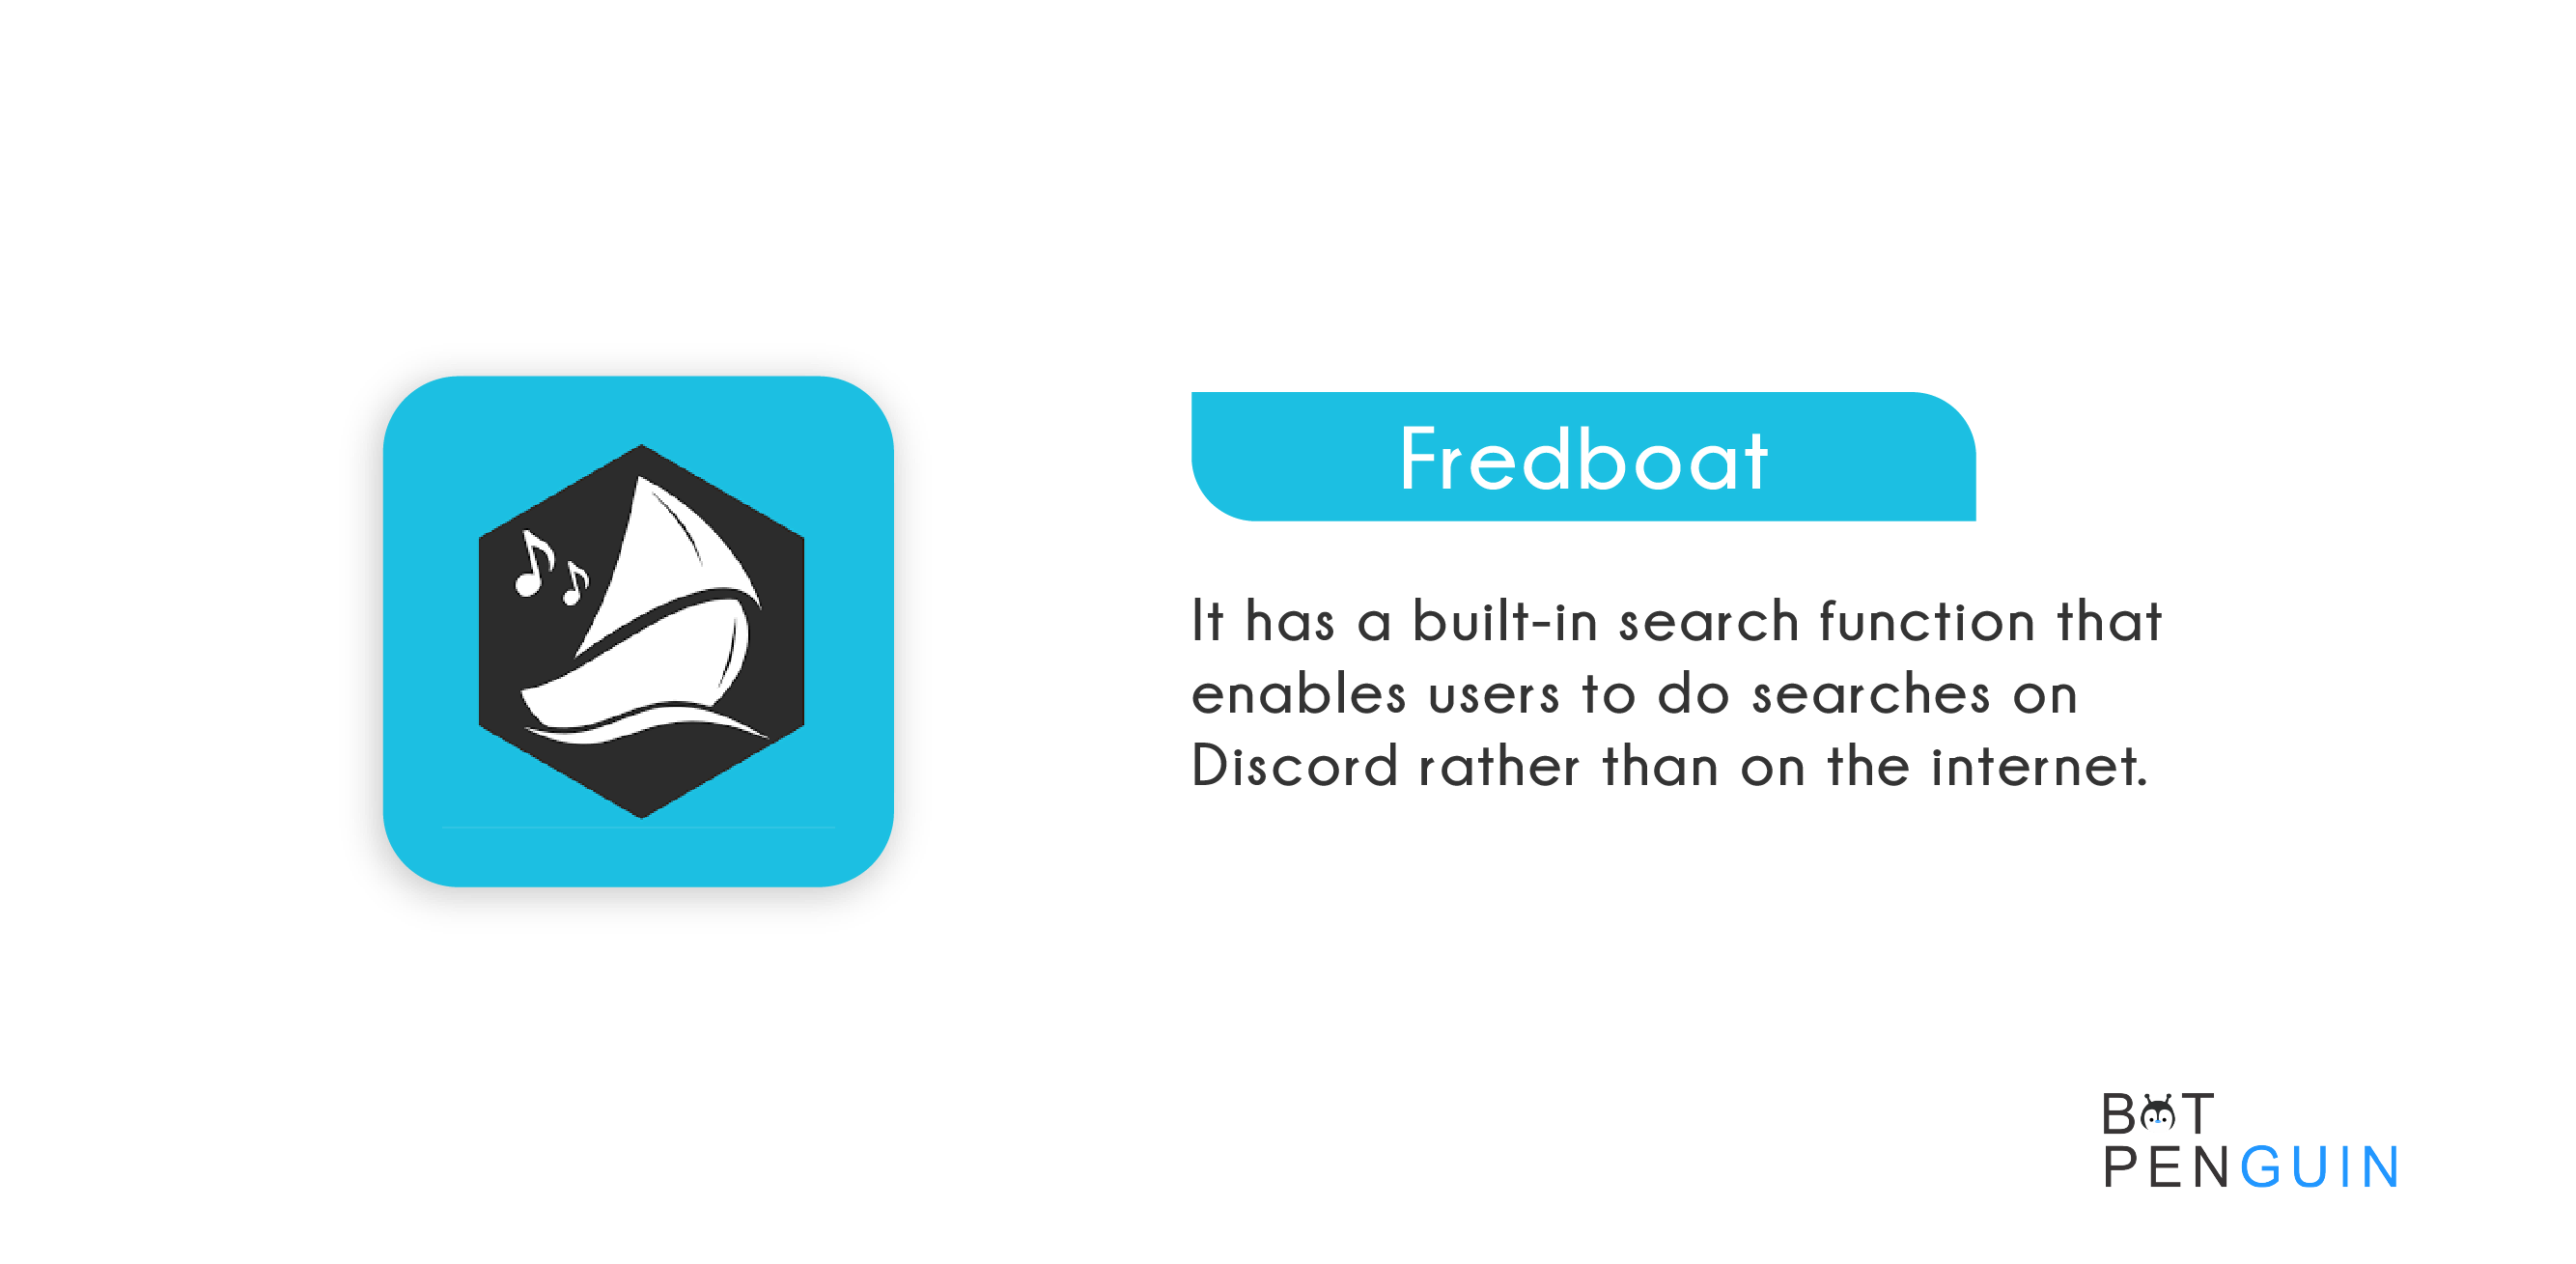 Fredboat